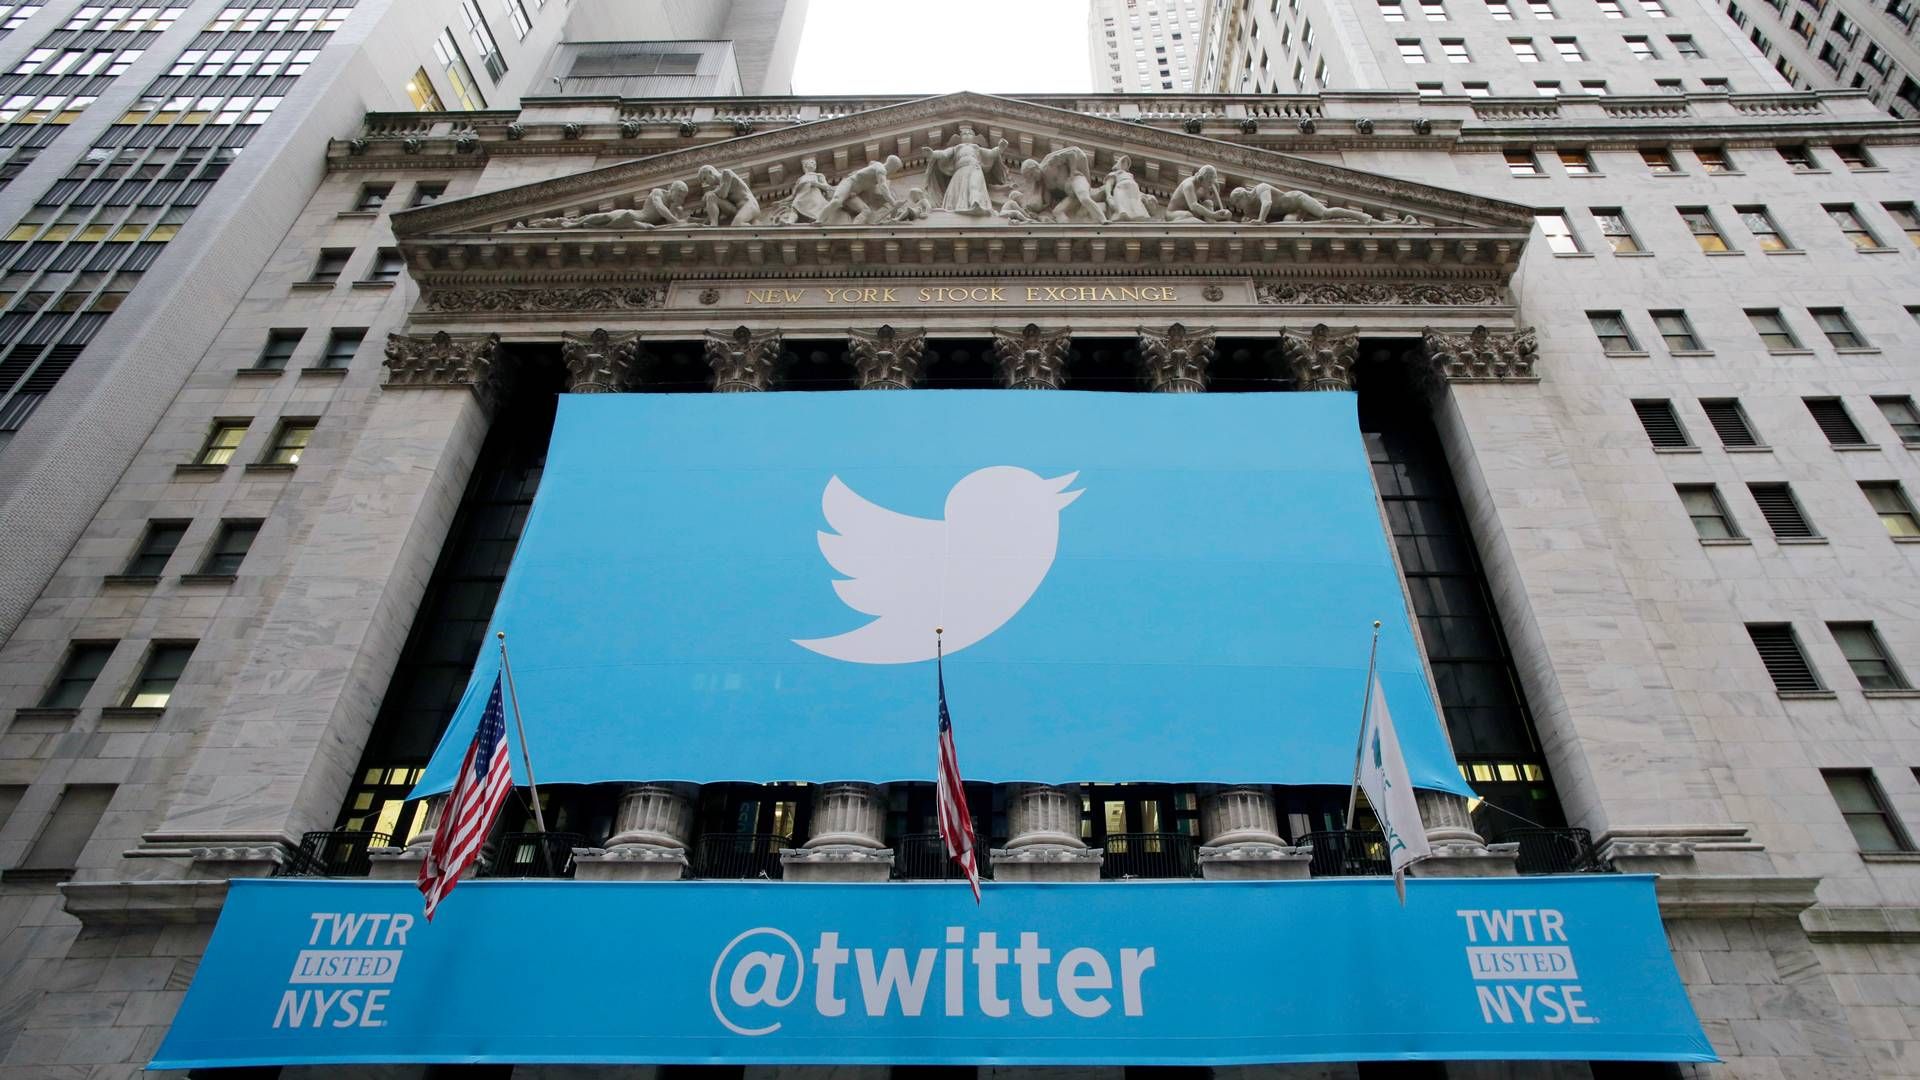 Ved børsnoteringen i 2013 steg Twitters aktiekurs med voldsomme 73 pct. på åbningsdagen. I dag ligger kursen på næsten halvdelen af åbningskursen. | Foto: Mark Lennihan/AP/Polfoto/Arkiv